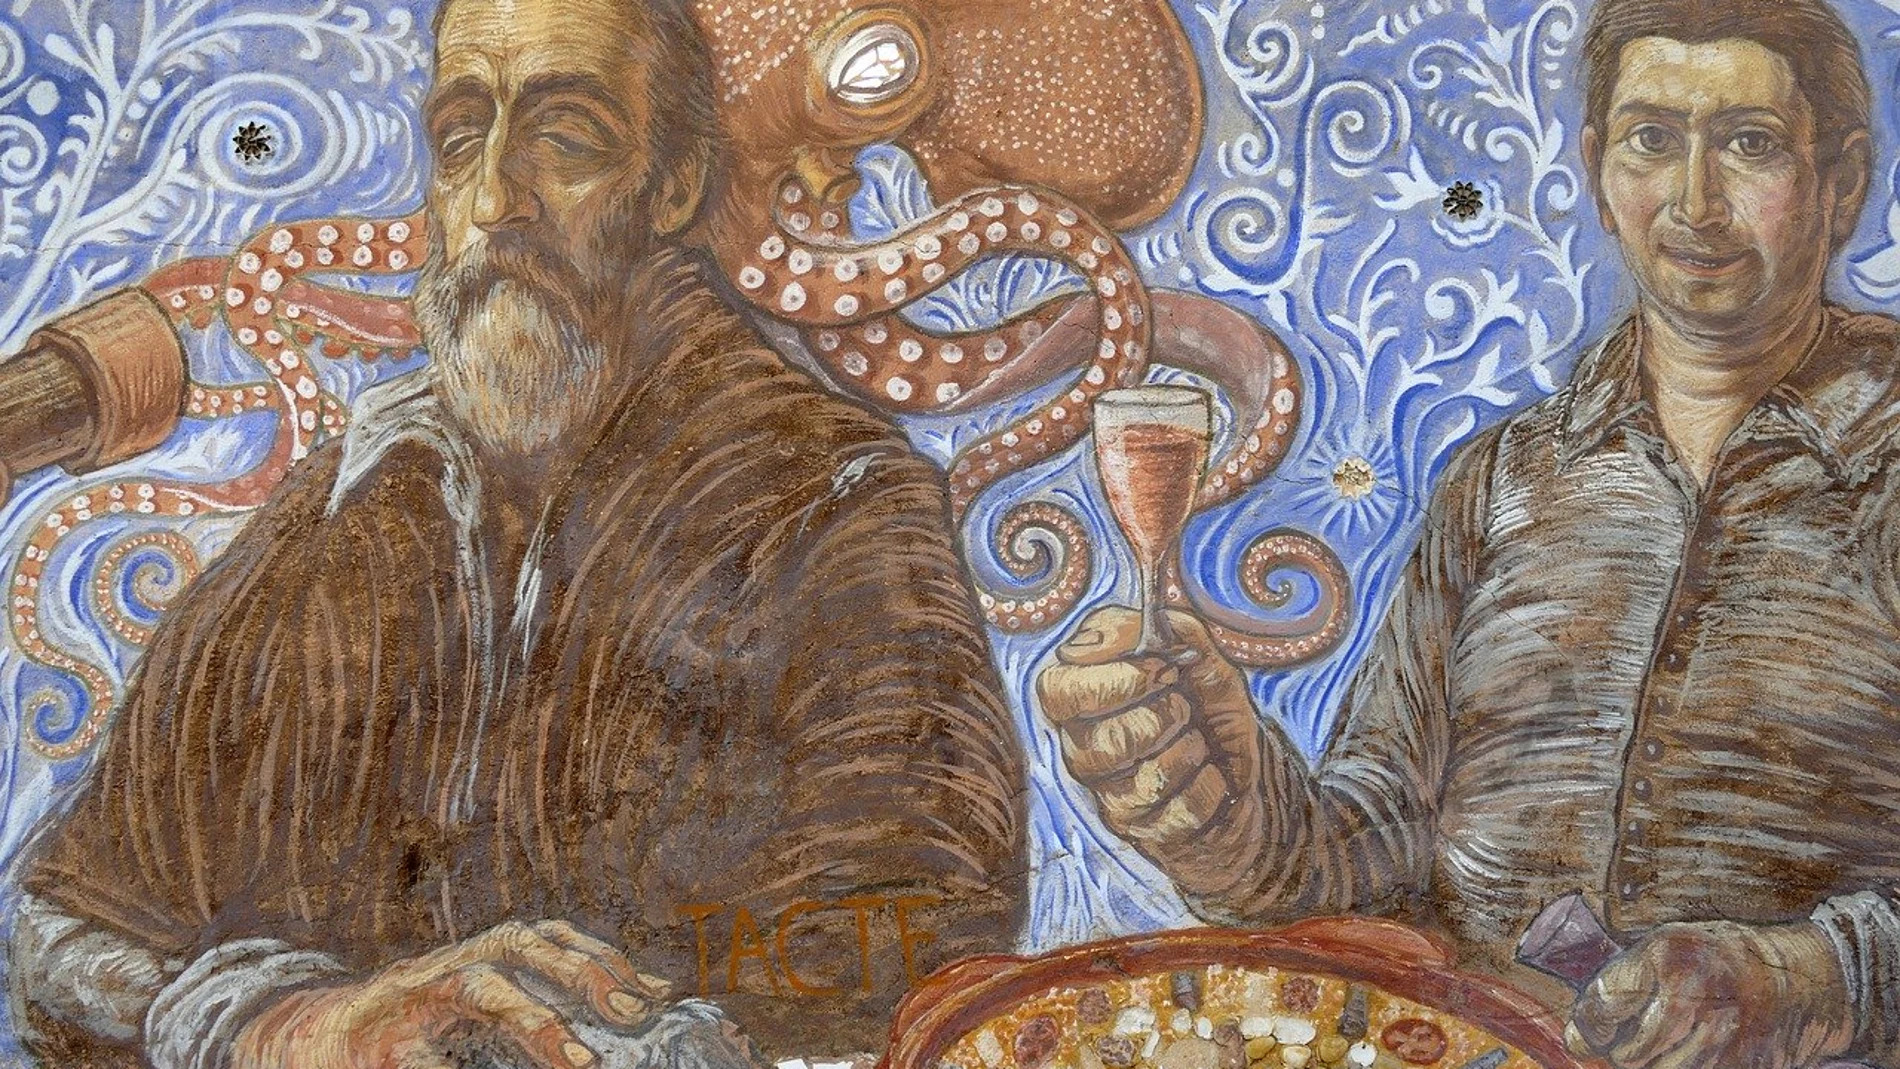 Mural de una degustación de paella valenciana.